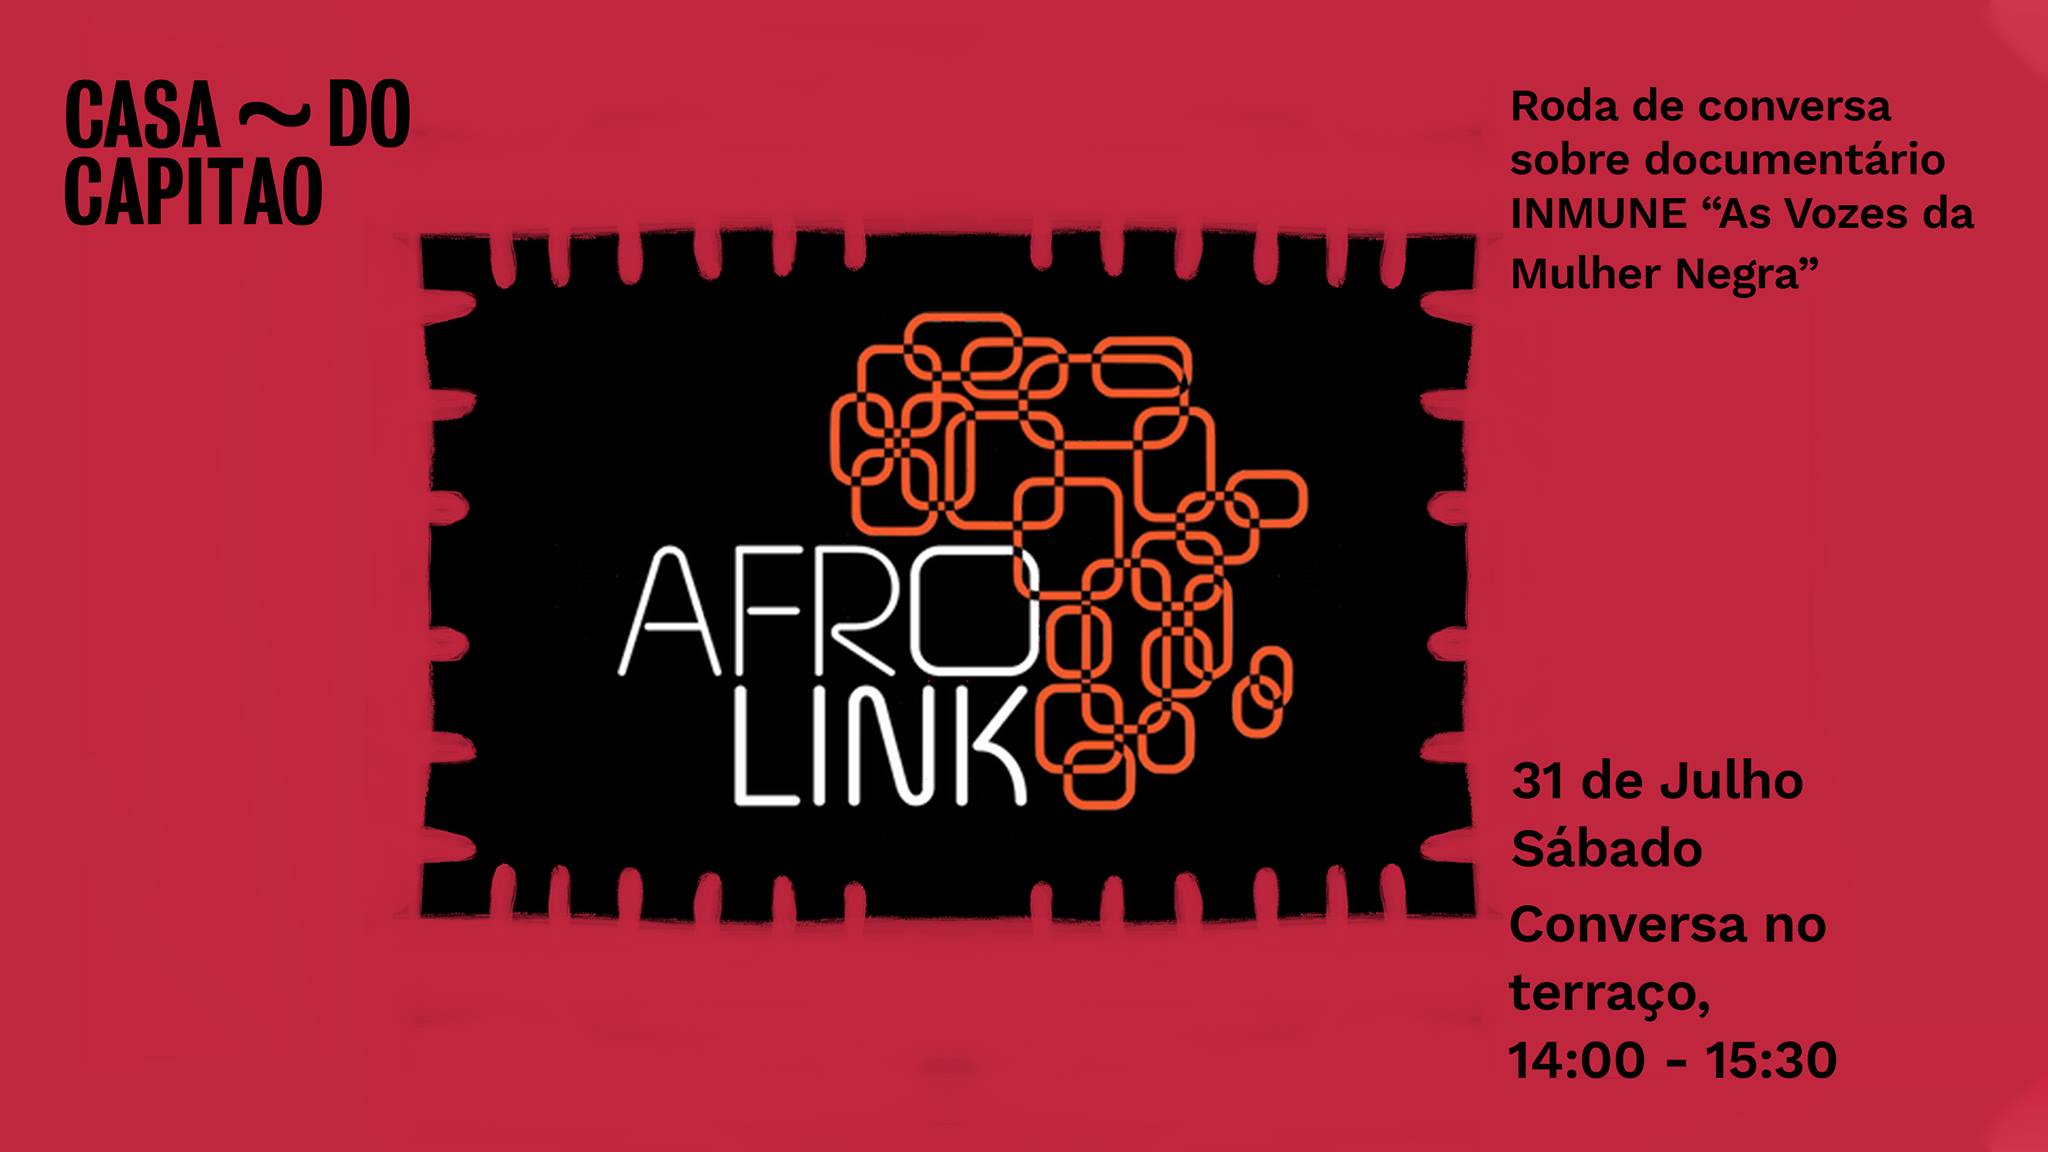 Roda de conversa sobre documentário INMUNE “As Vozes da Mulher Negra” • Conversa no terraço